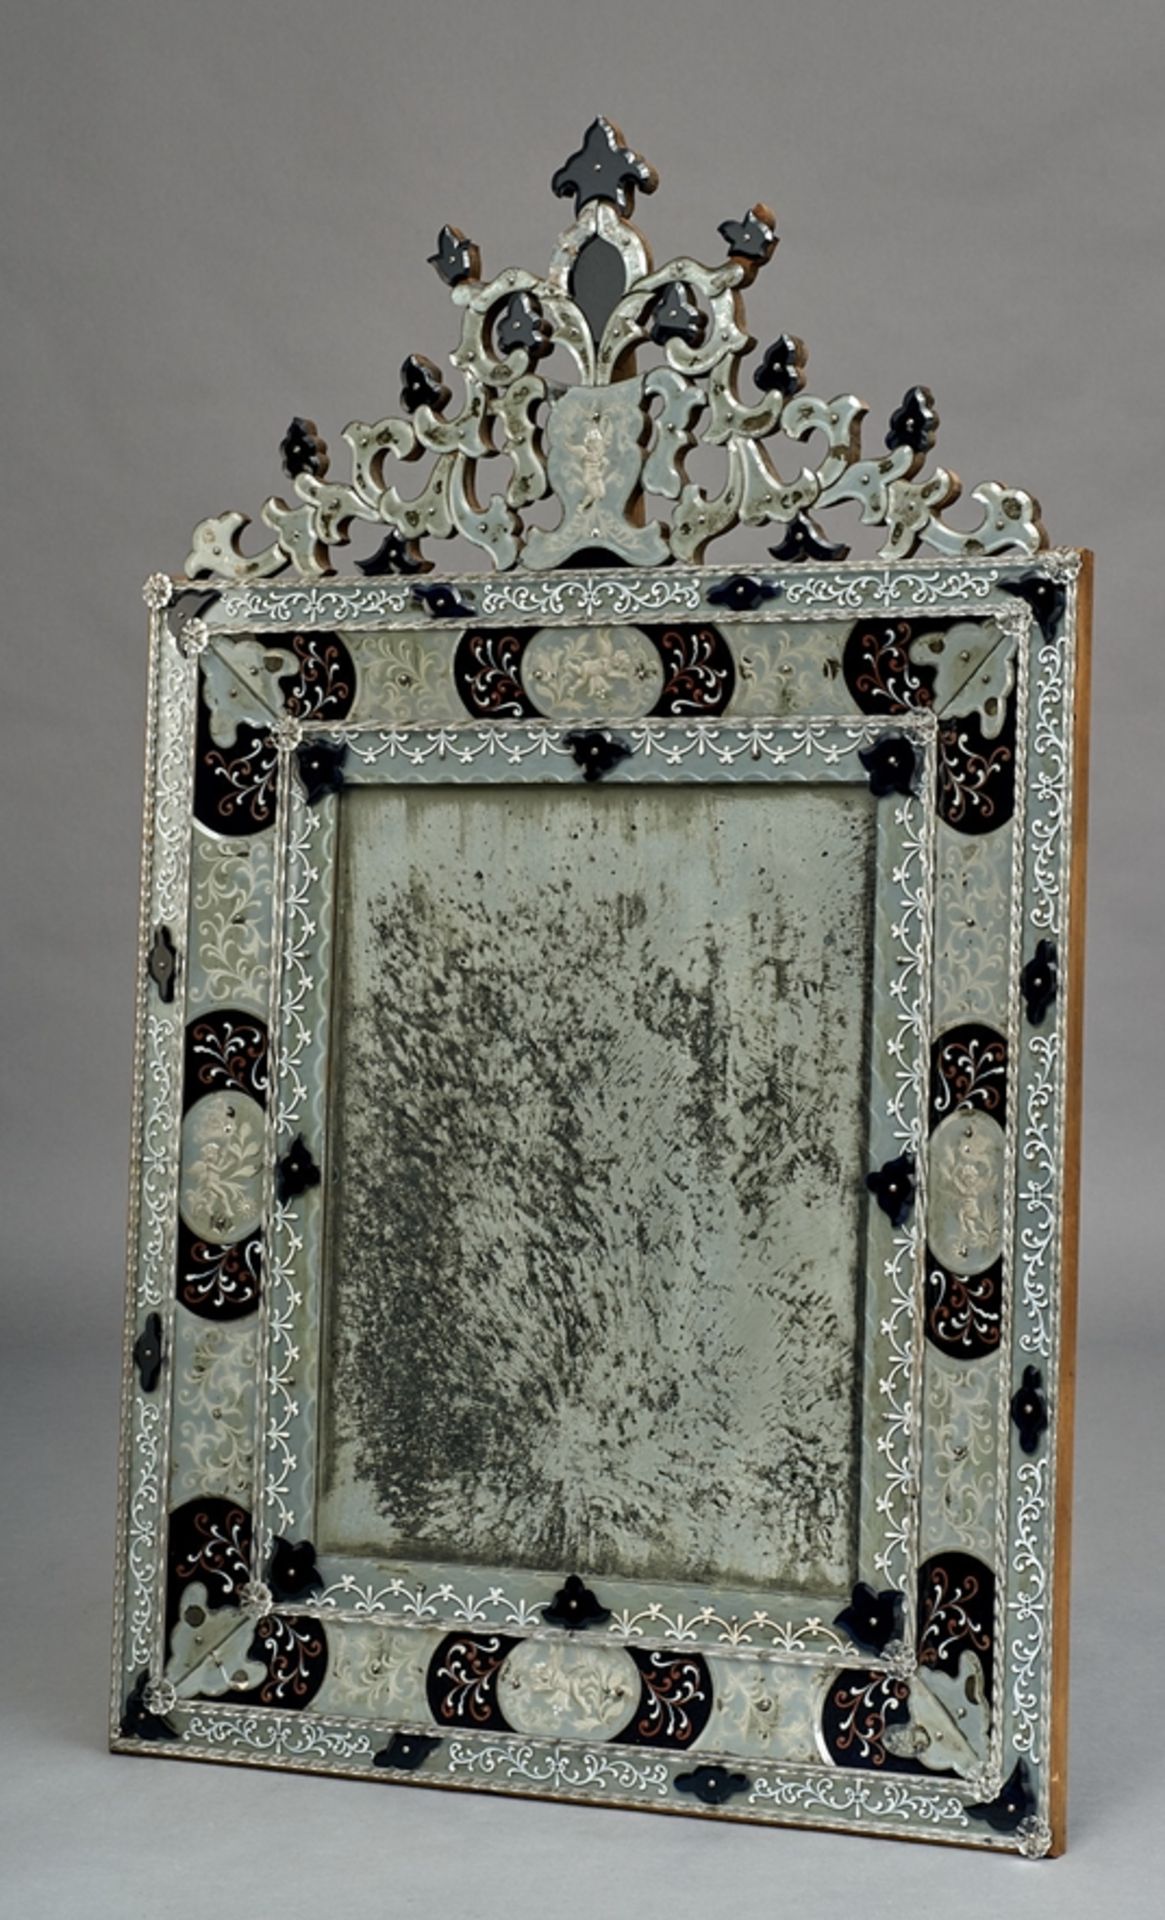 Spiegel im venezianischen Stil. Zierätzung und Bemalung. Zirndorfer Spiegelfabrik. Um 1900. 130 x 8